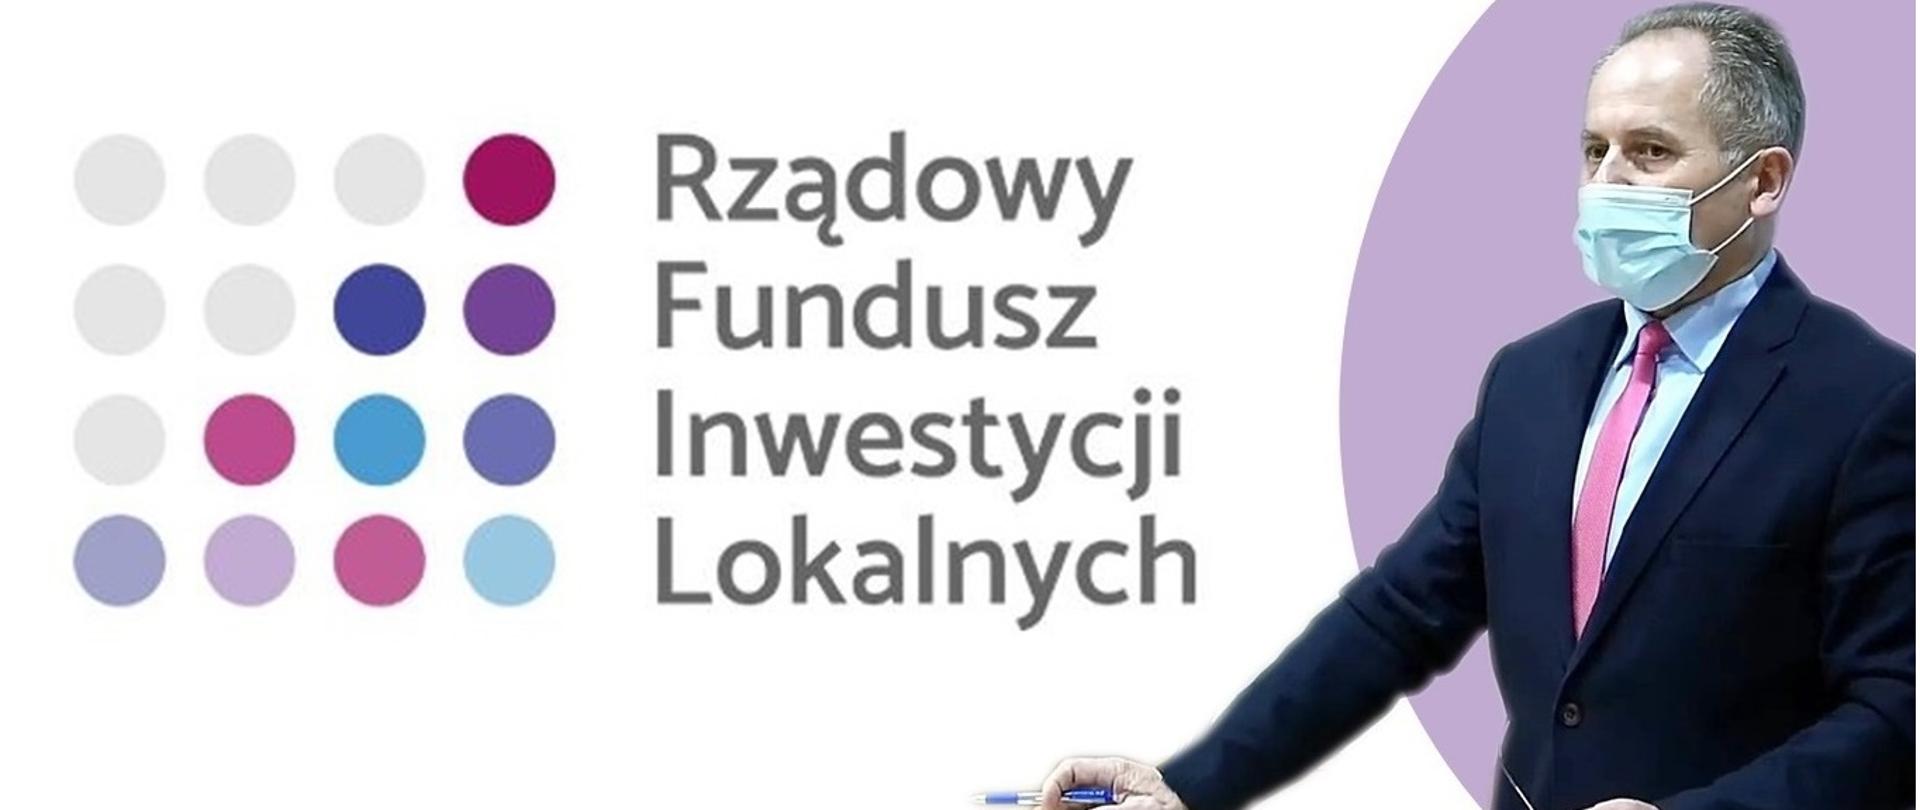 - Powiat złoży wniosek z RFIL na rozbudowę szpitala - poinformował wicestarosta Stanisław Stępień